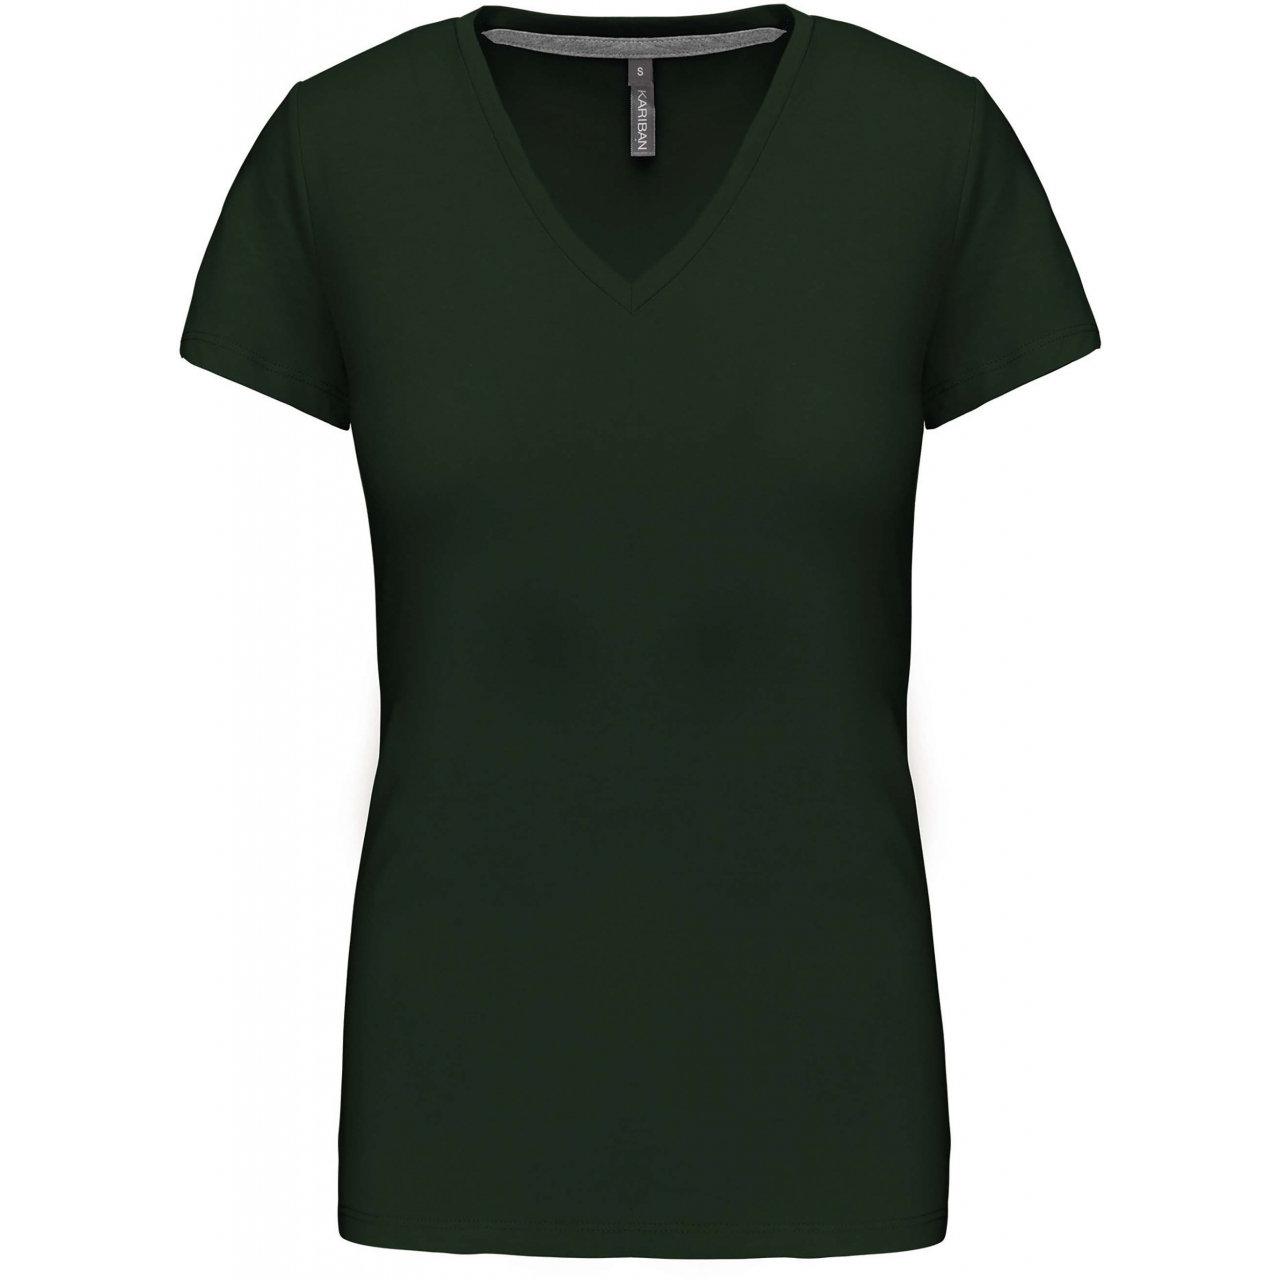 Dámské tričko Kariban V-neck s krátkým rukávem - tmavě zelené, XXL